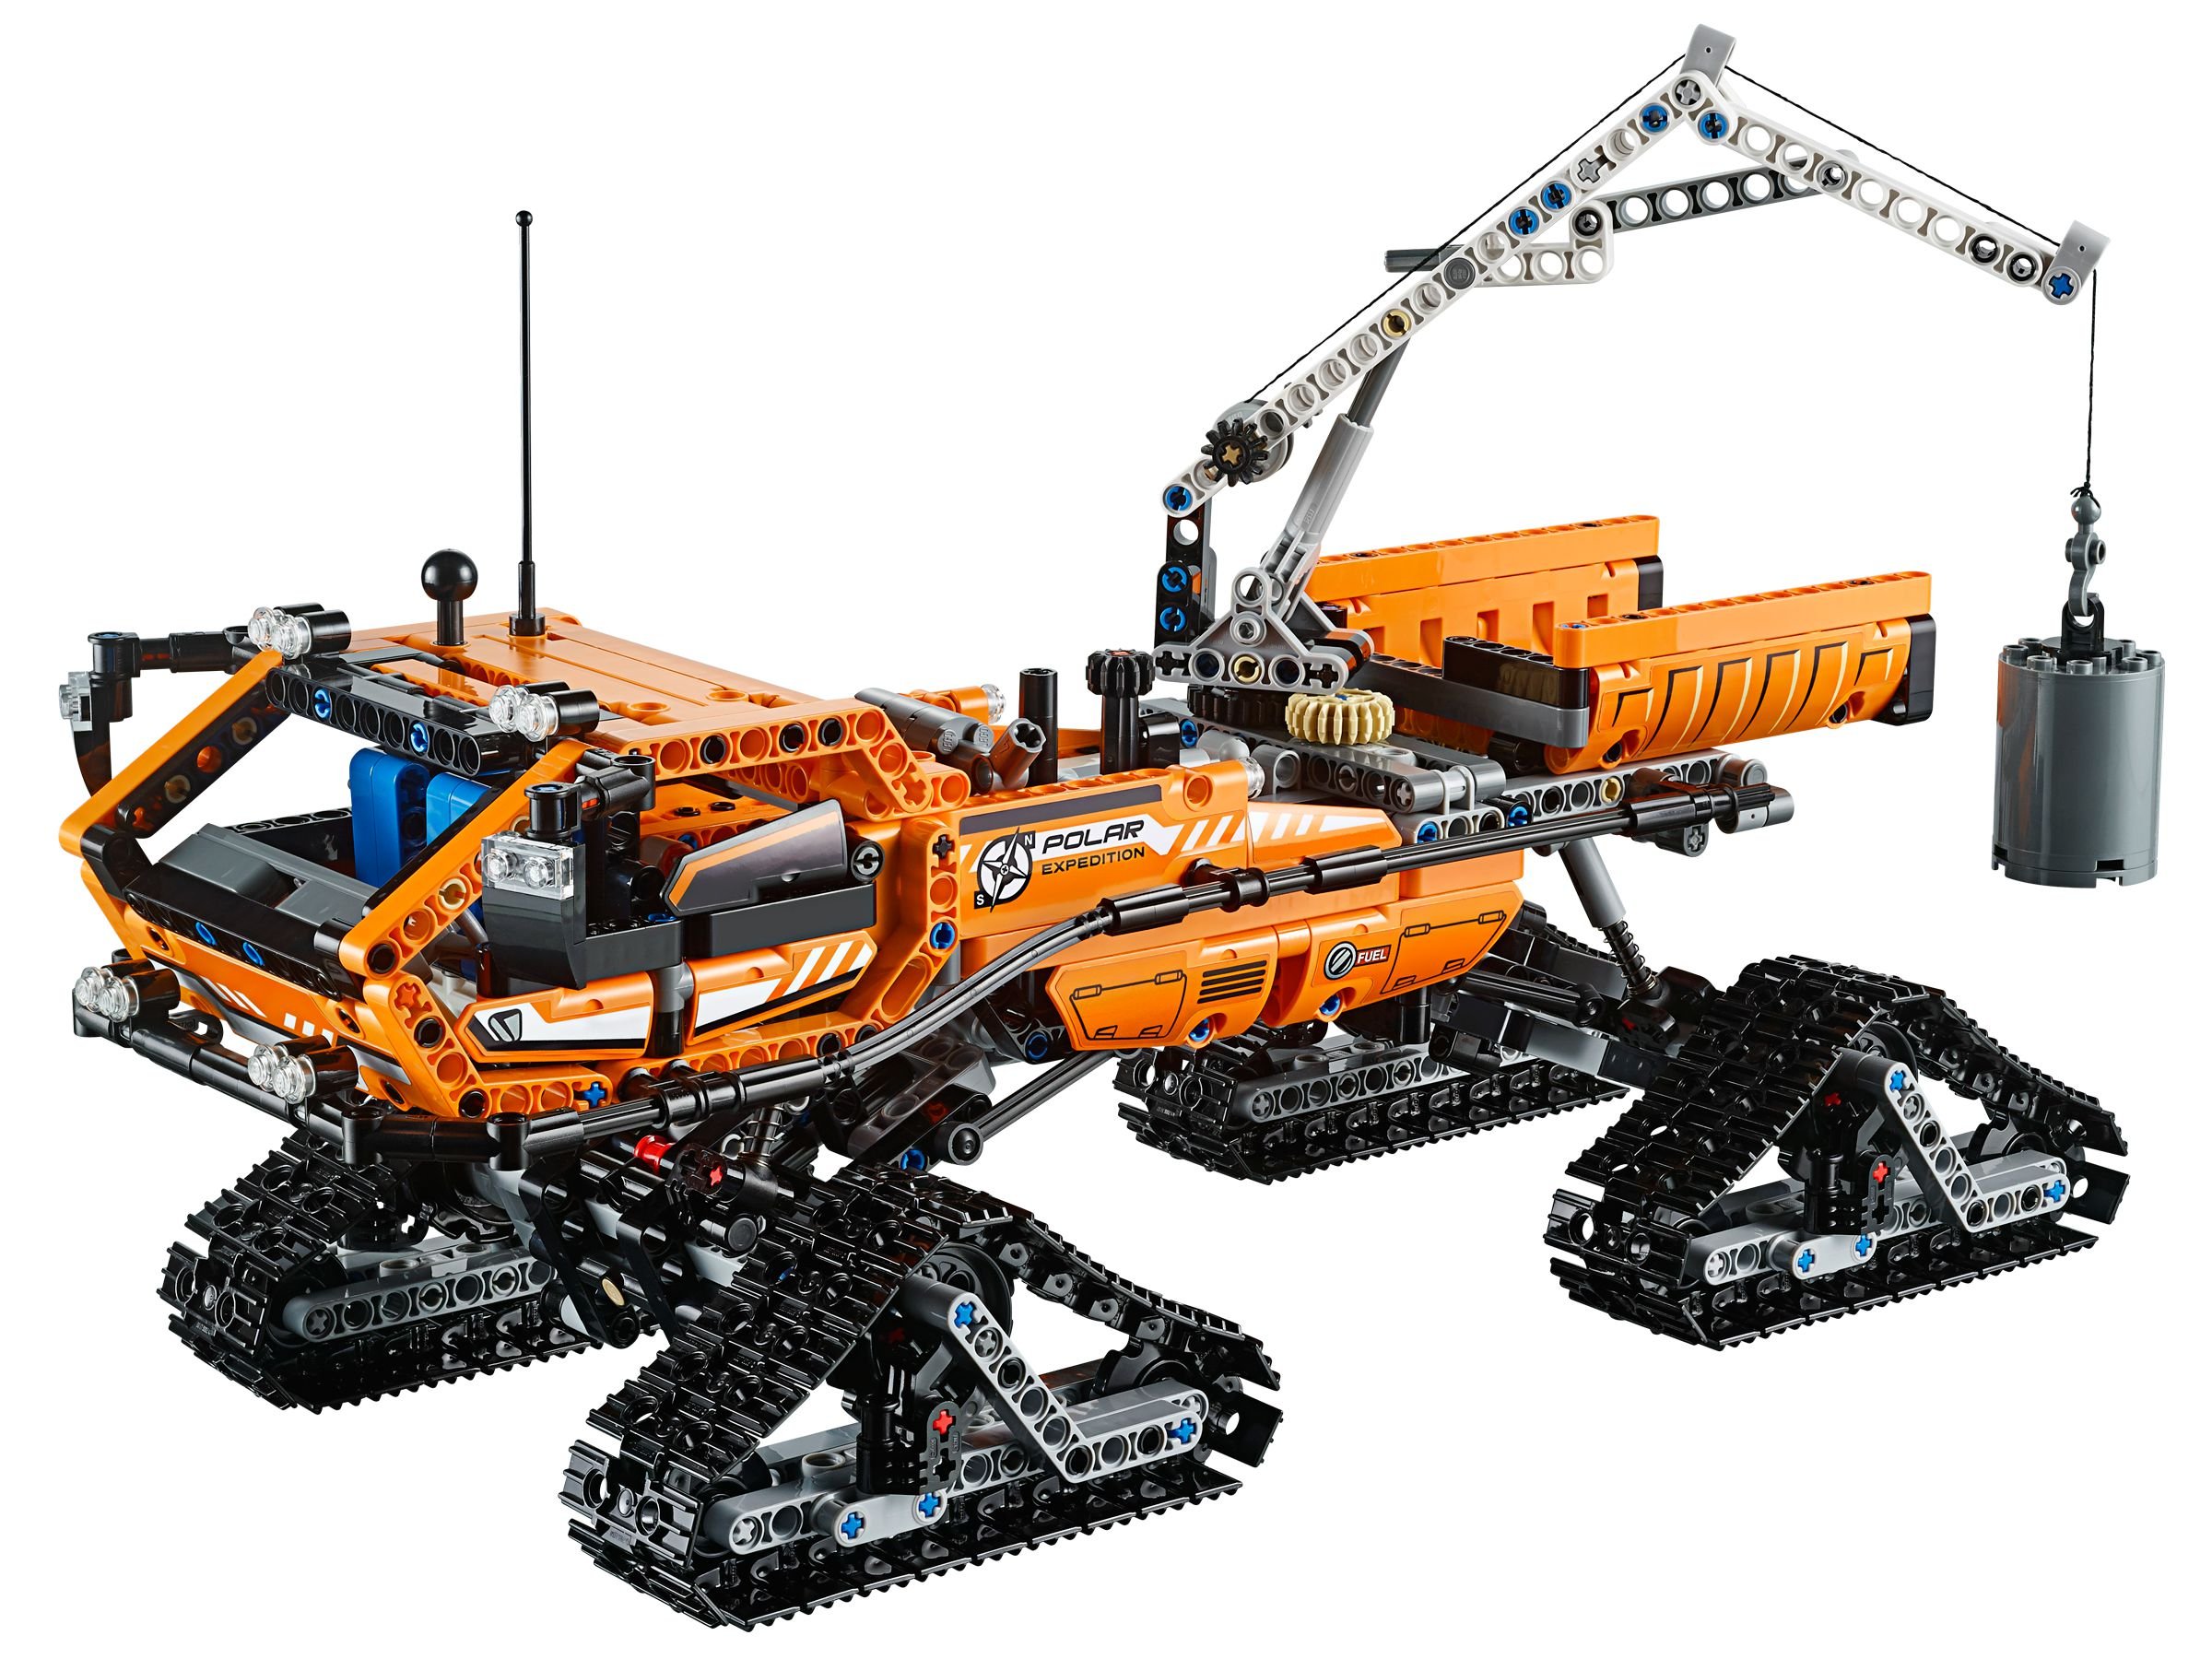 LEGO Technic 42038 Arktis-Kettenfahrzeug LEGO_42038.jpg